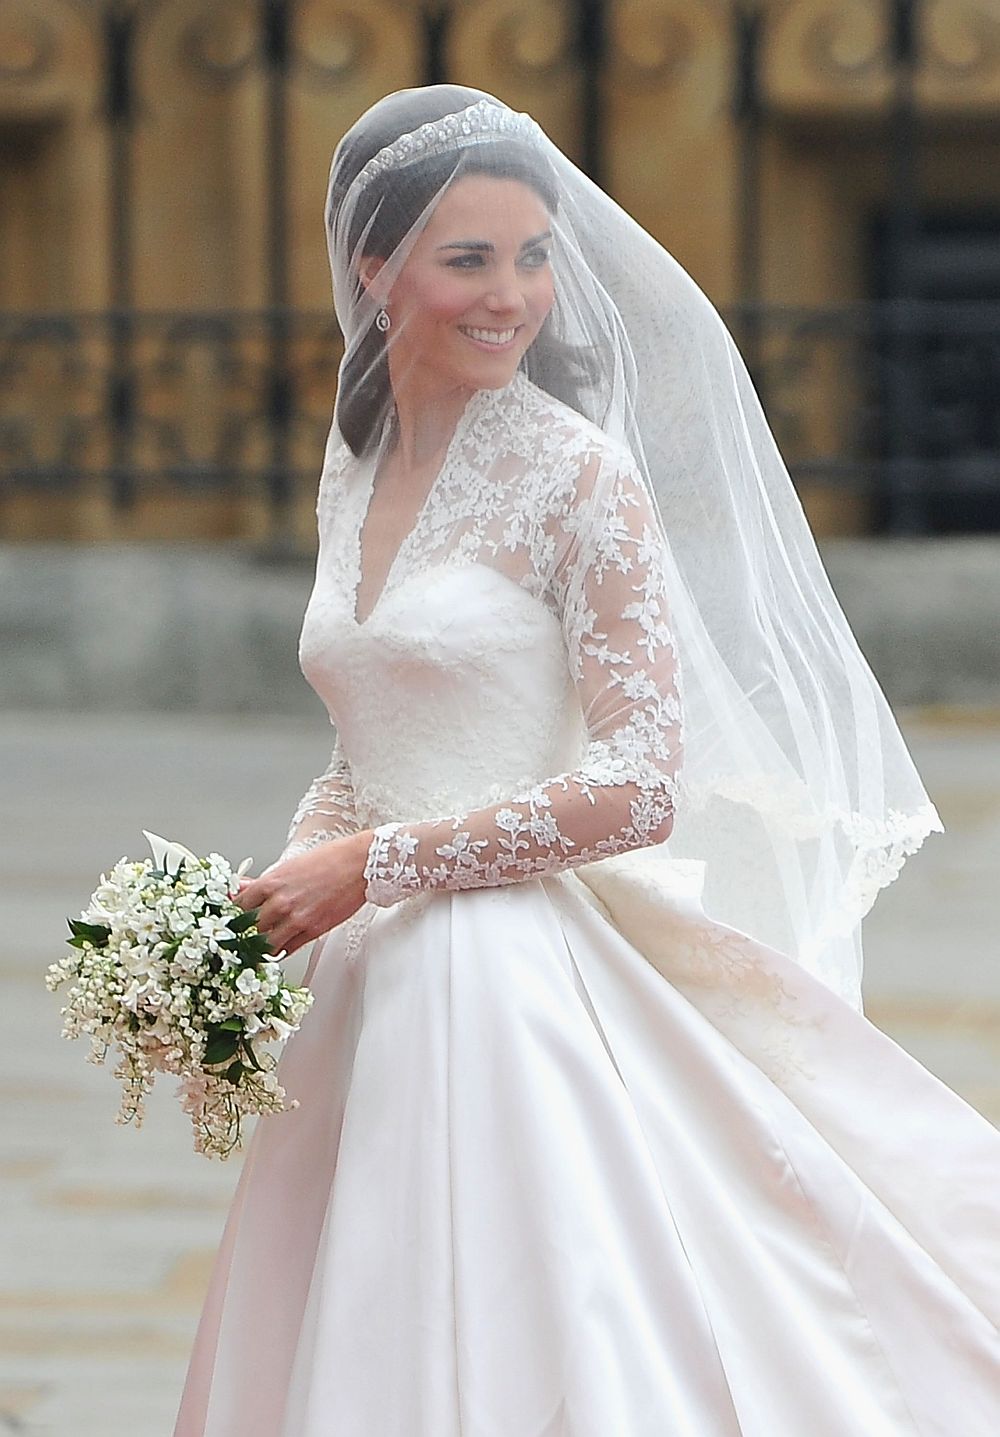 В класацията попадна също сватбената рокля на съпругата на принц Уилям - Катрин, оценена на 400 000 щатски долара.